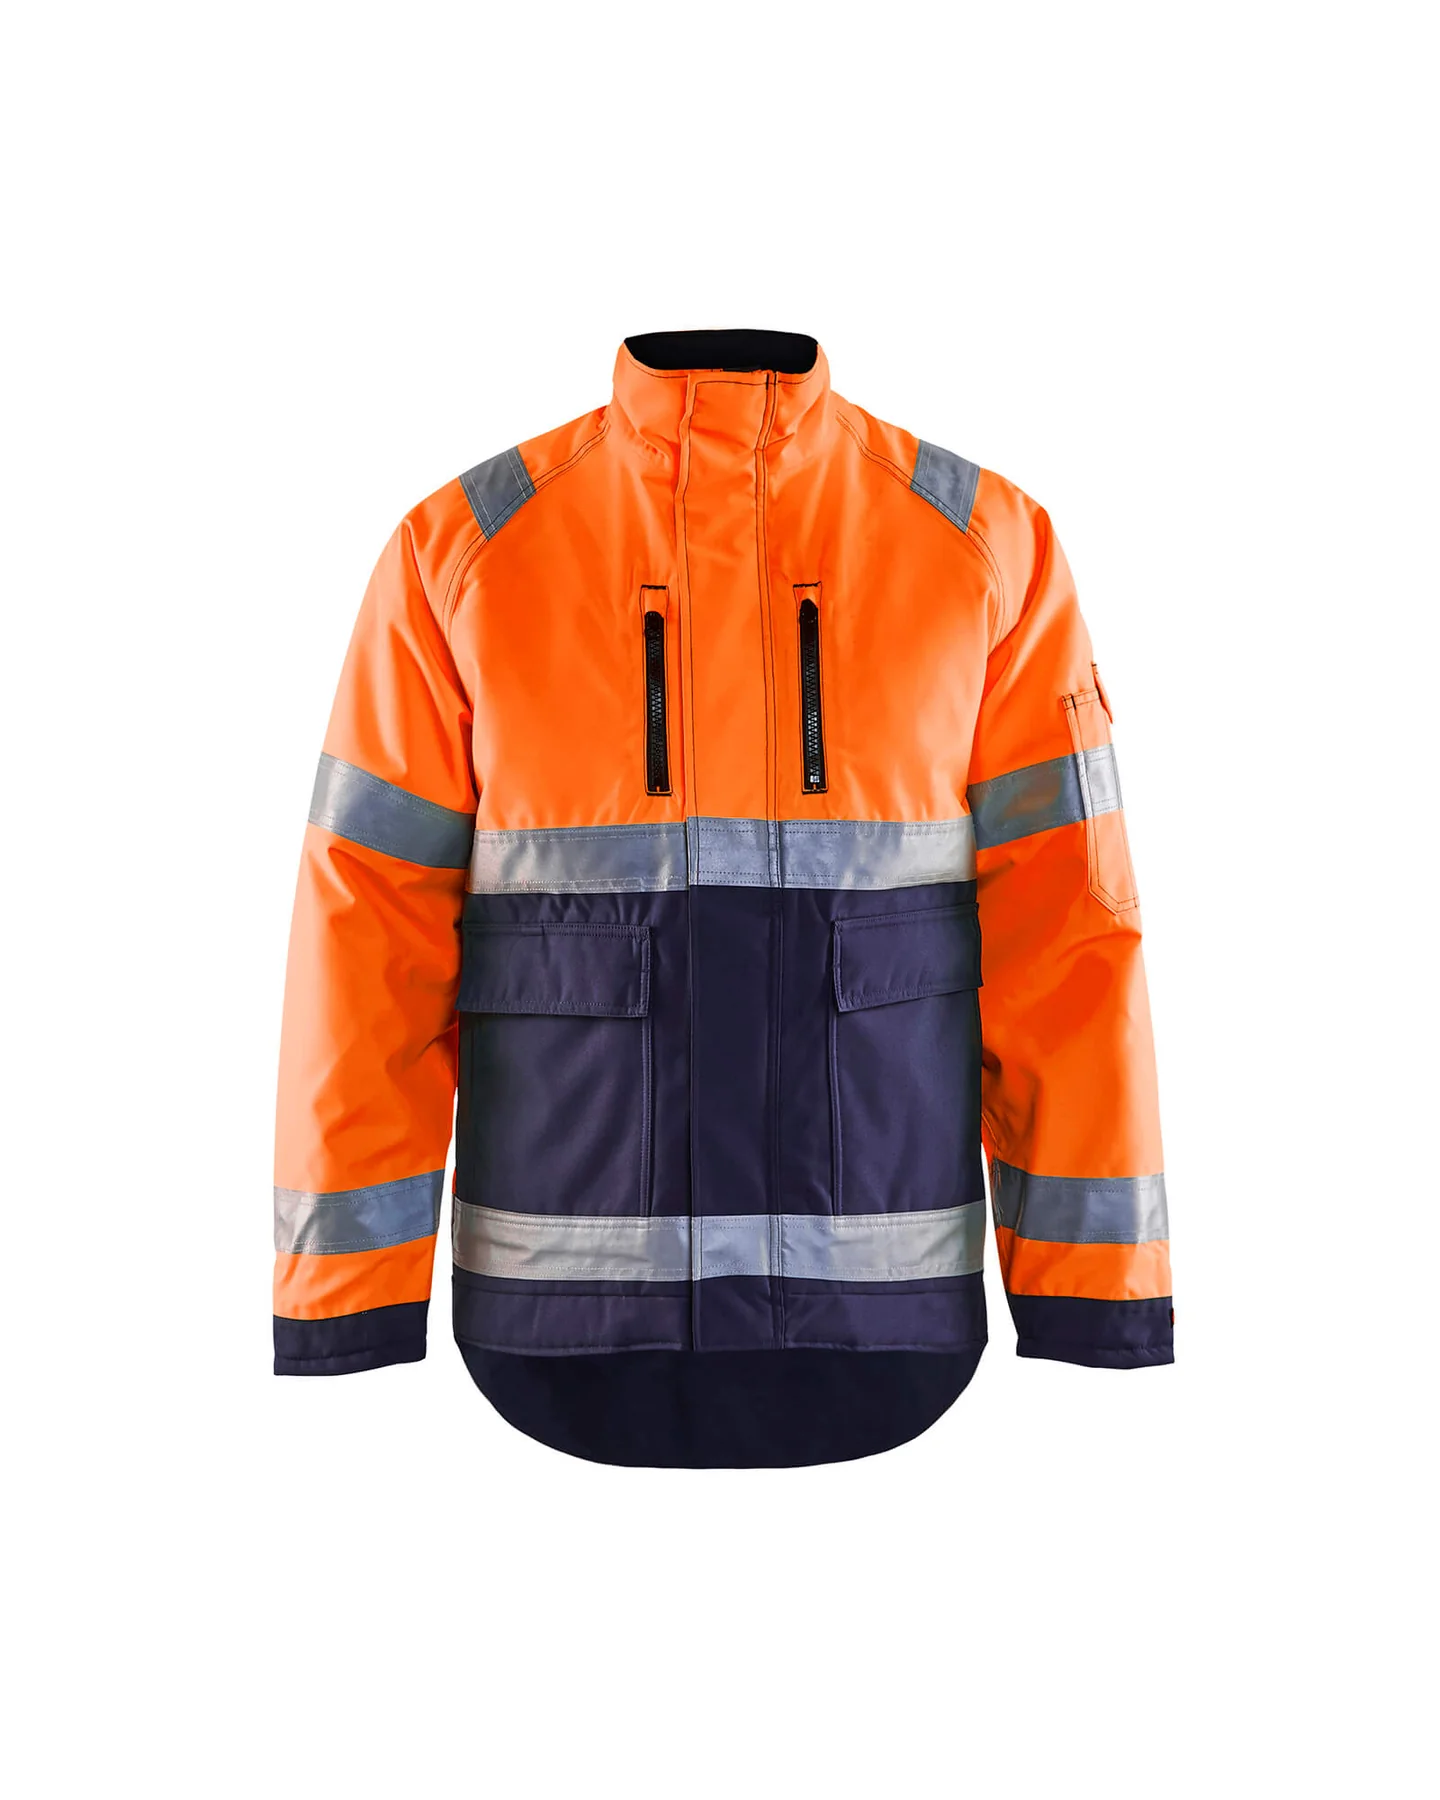 blaklader-hi-vis-winter-jacket-48271977-orange-navy-blue-1-1800×1800.webp